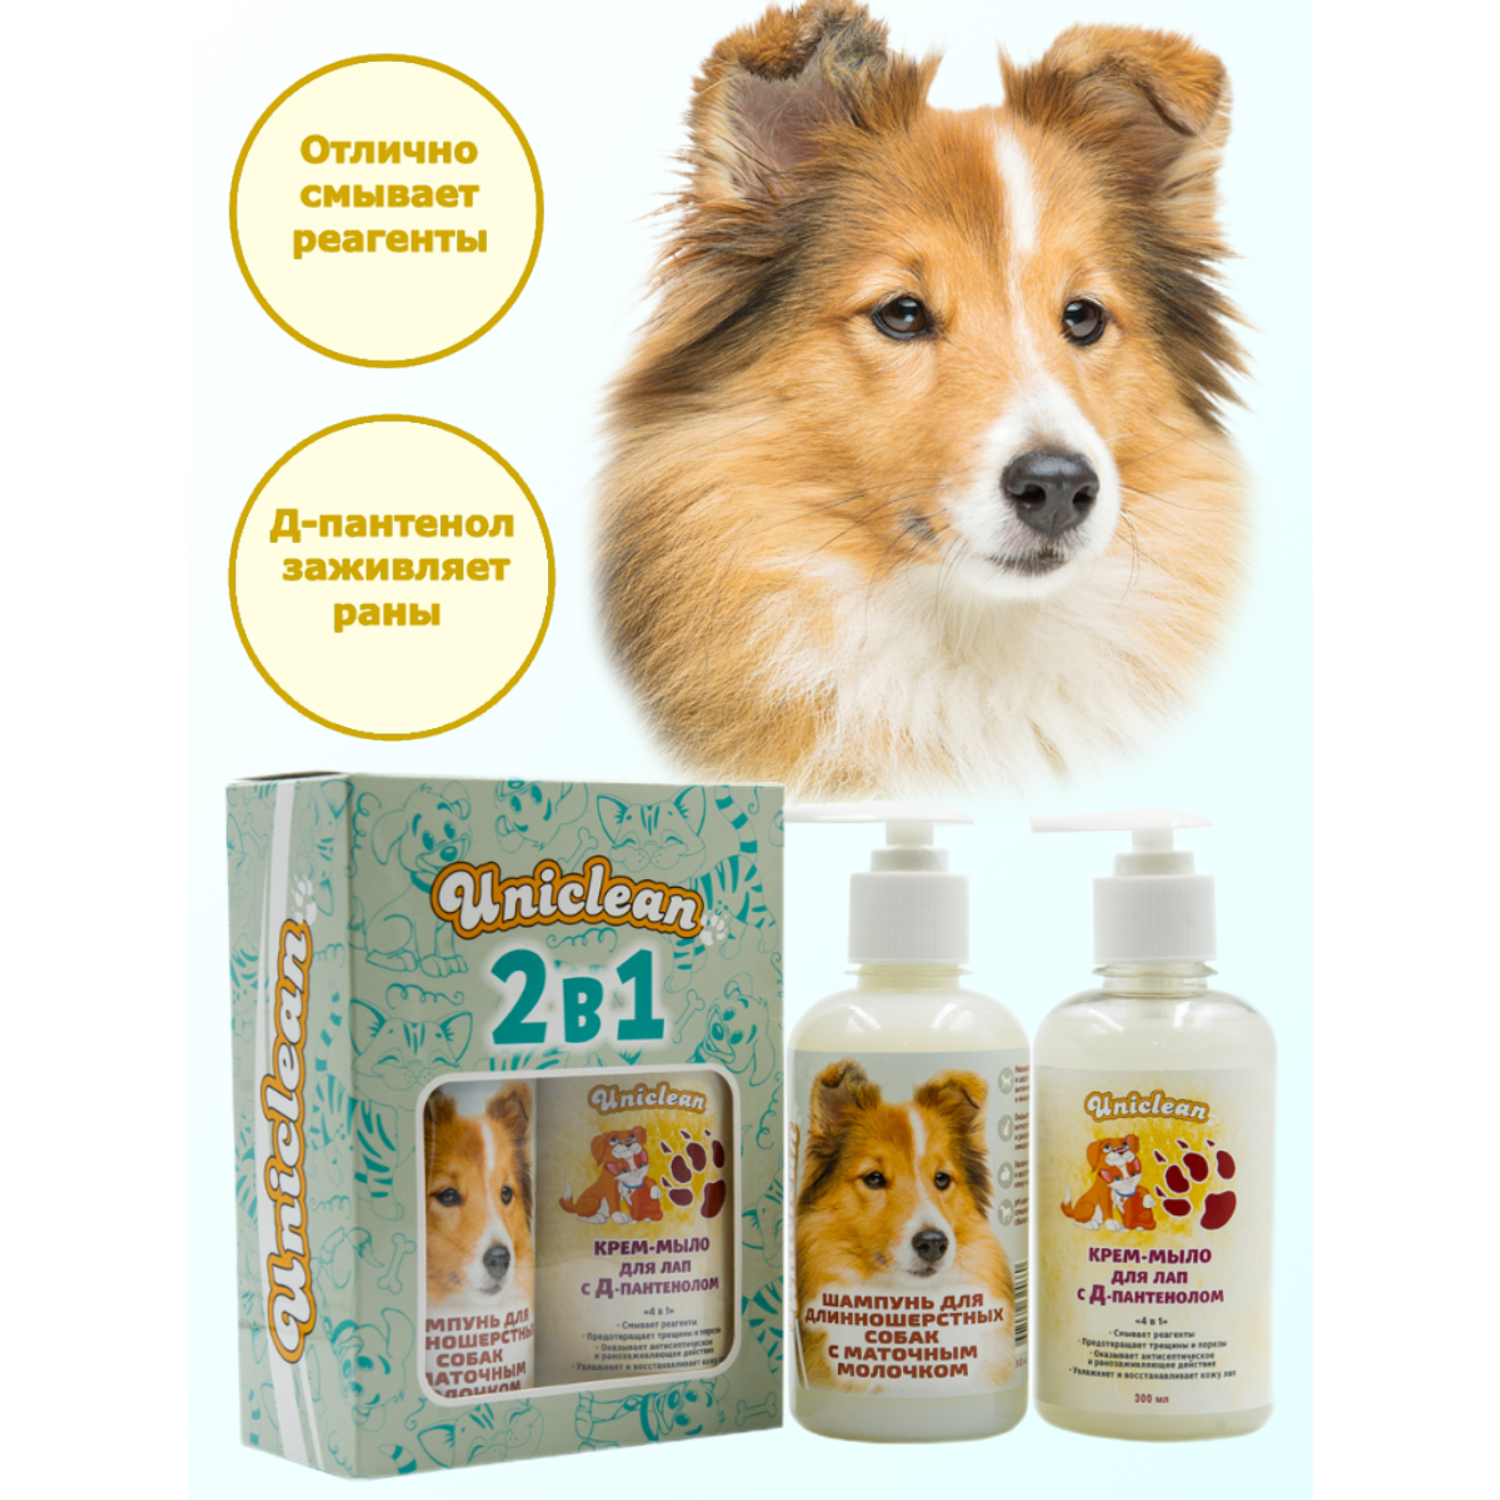 Подарочный набор Uniclean шампунь для длинношерстных собак с маточным молочком и крем-мыло для лап с д-пантенолом - фото 1